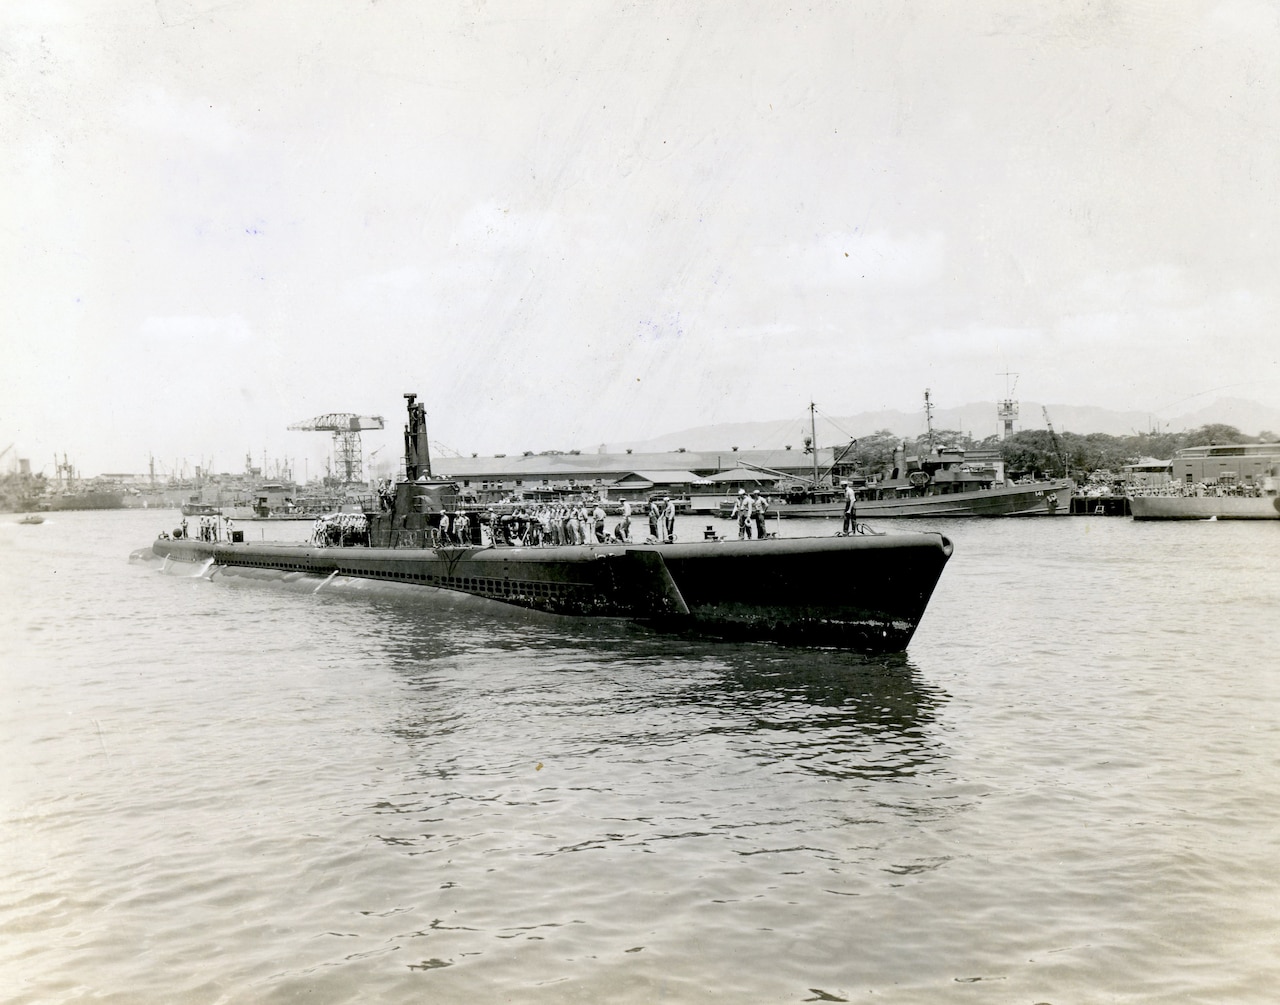 A World War II-era submarine surfaces near a port.